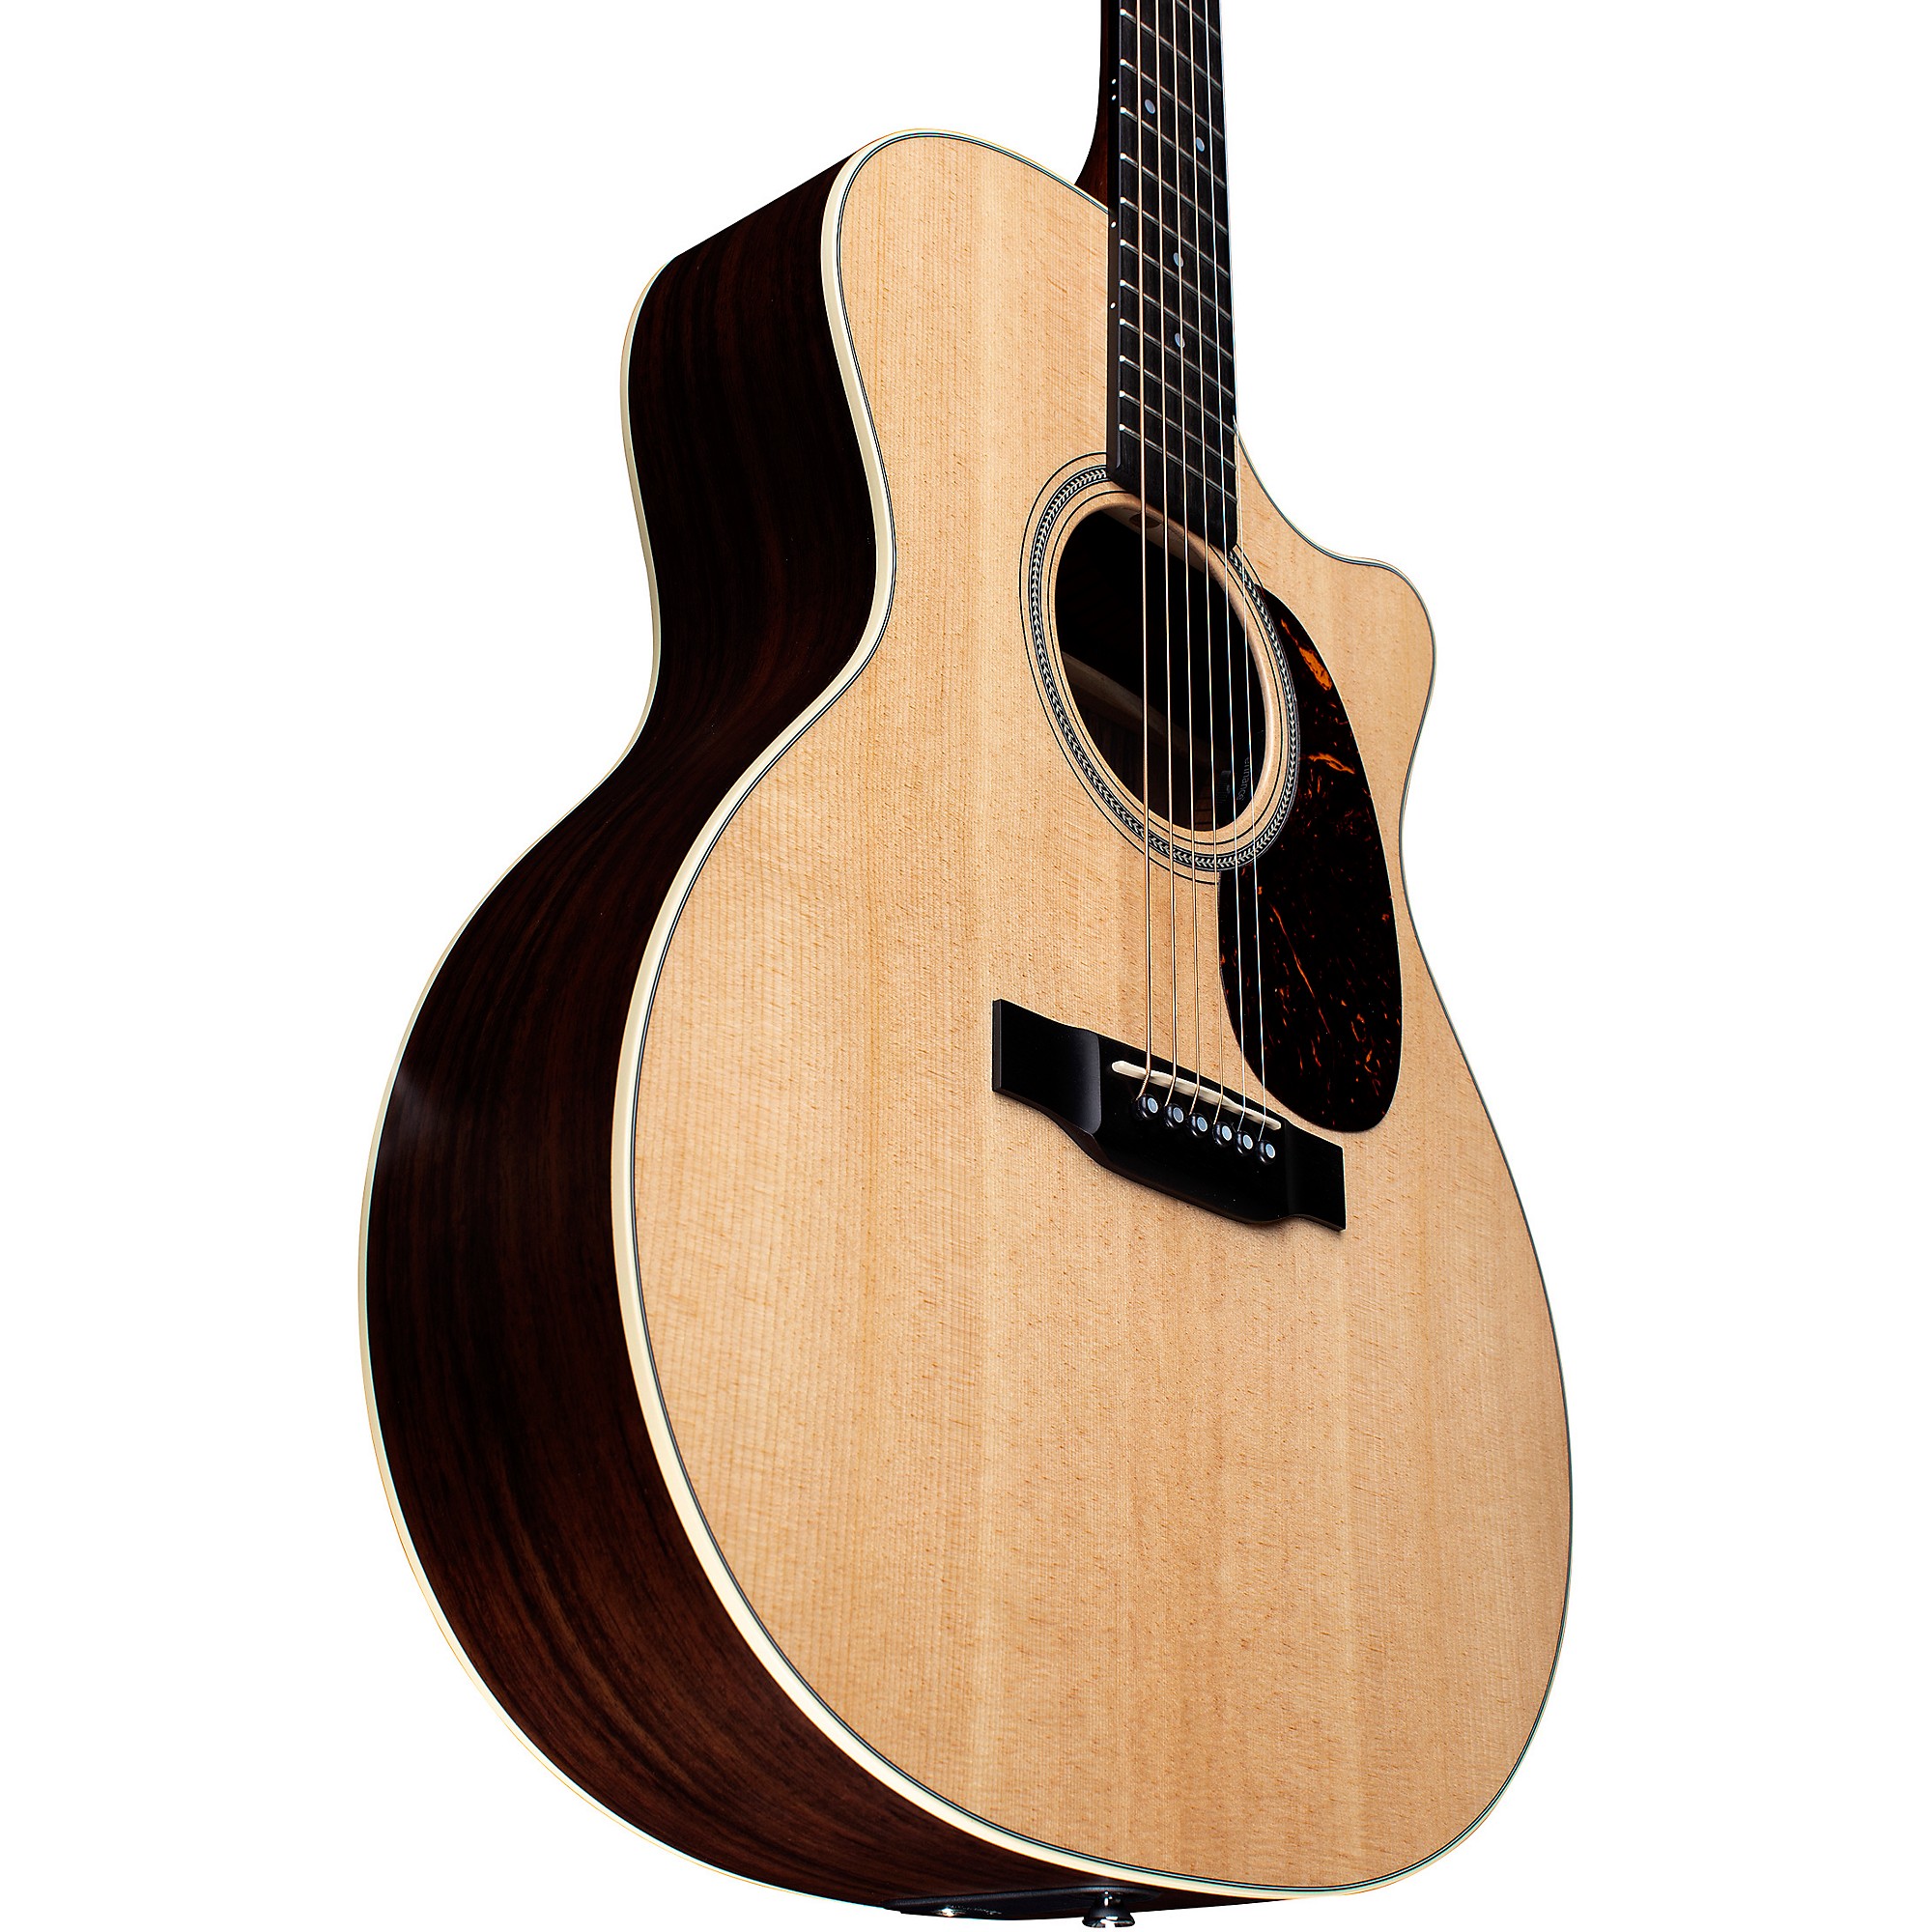 Акустически-электрическая гитара Martin GPC-16E 16 серии с палисандровым деревом Grand Performance Natural